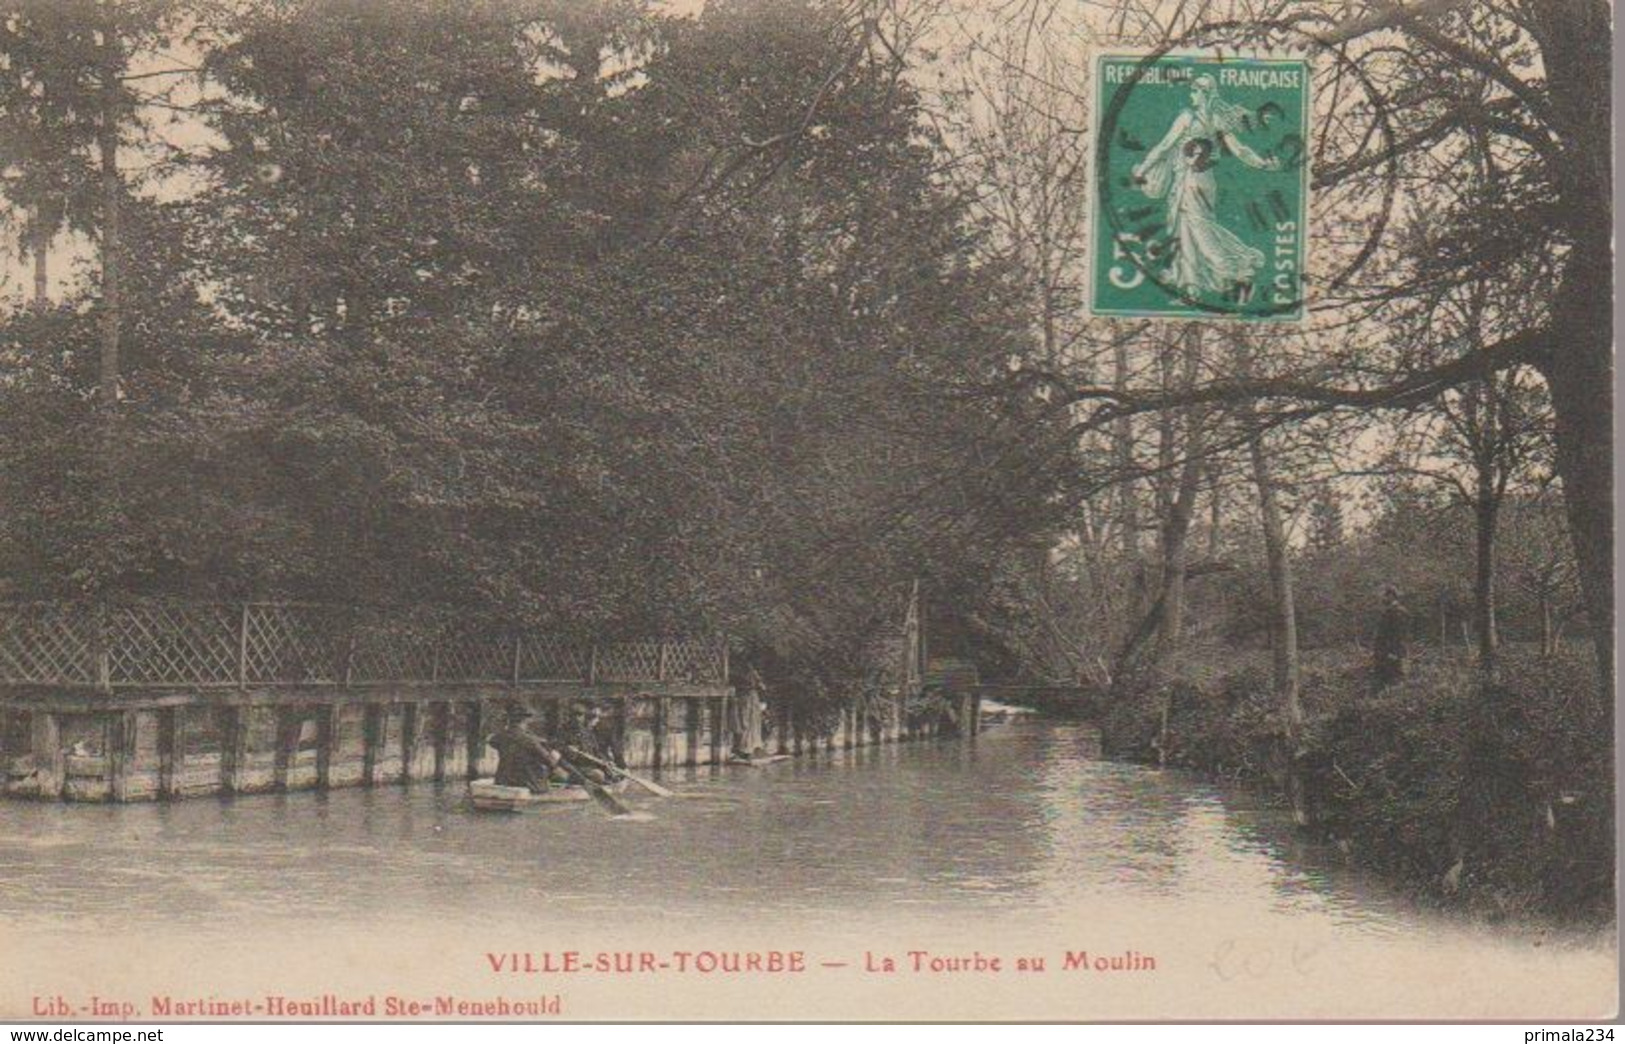 VILLE SUR TOURBE - LA TOURBE AU MOULIN - Ville-sur-Tourbe